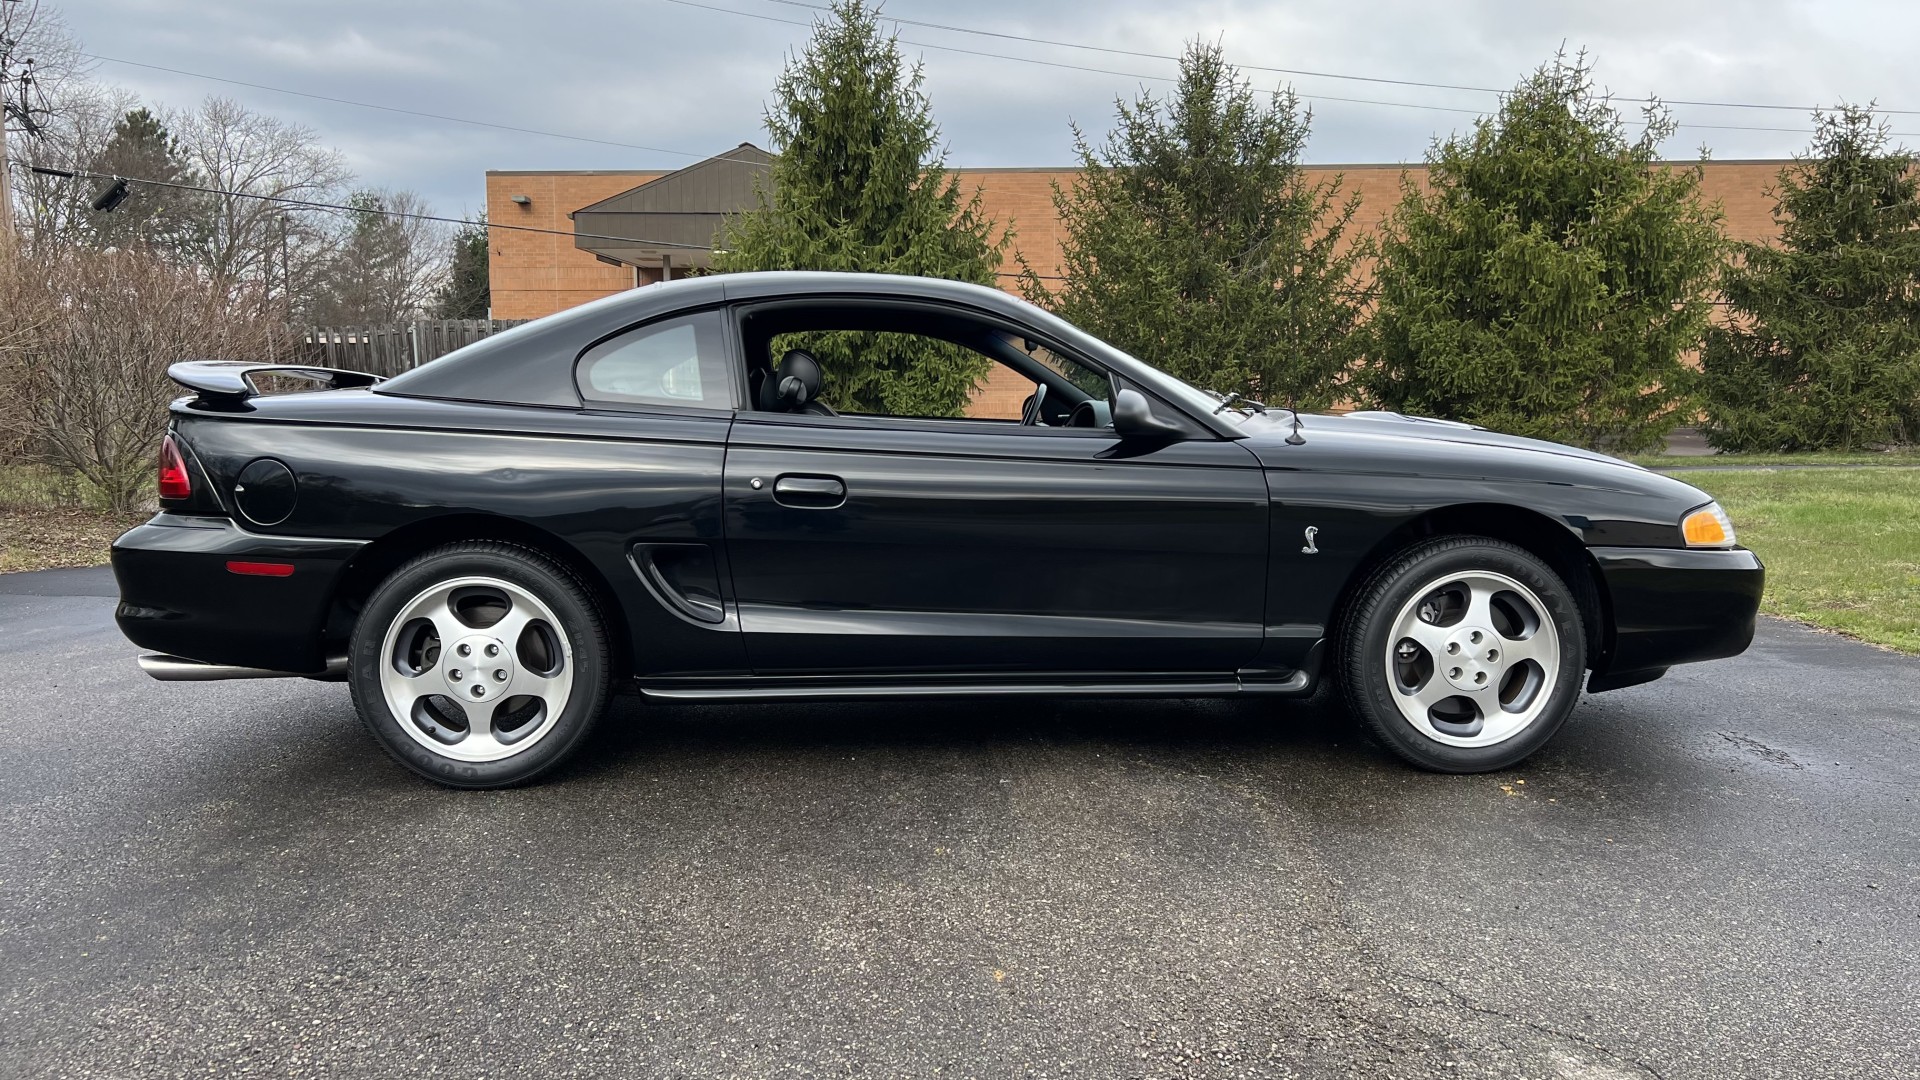 1996 Mustang Cobra, 20K miles, 1 owner, Original, Sold!